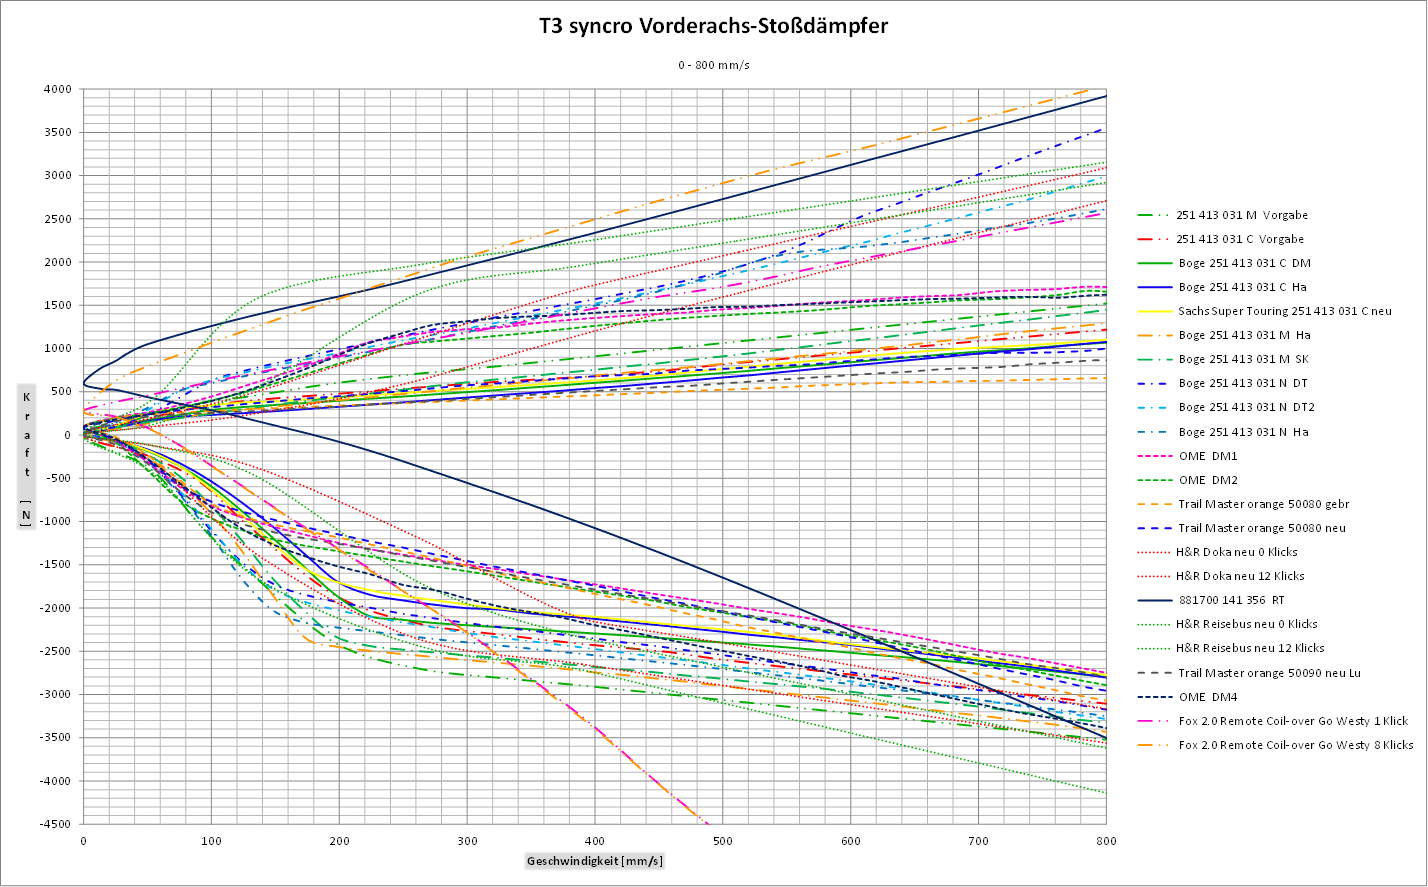 T3 syncro Vorderachs-Stossdaempfer Diagramm 0-800.gif